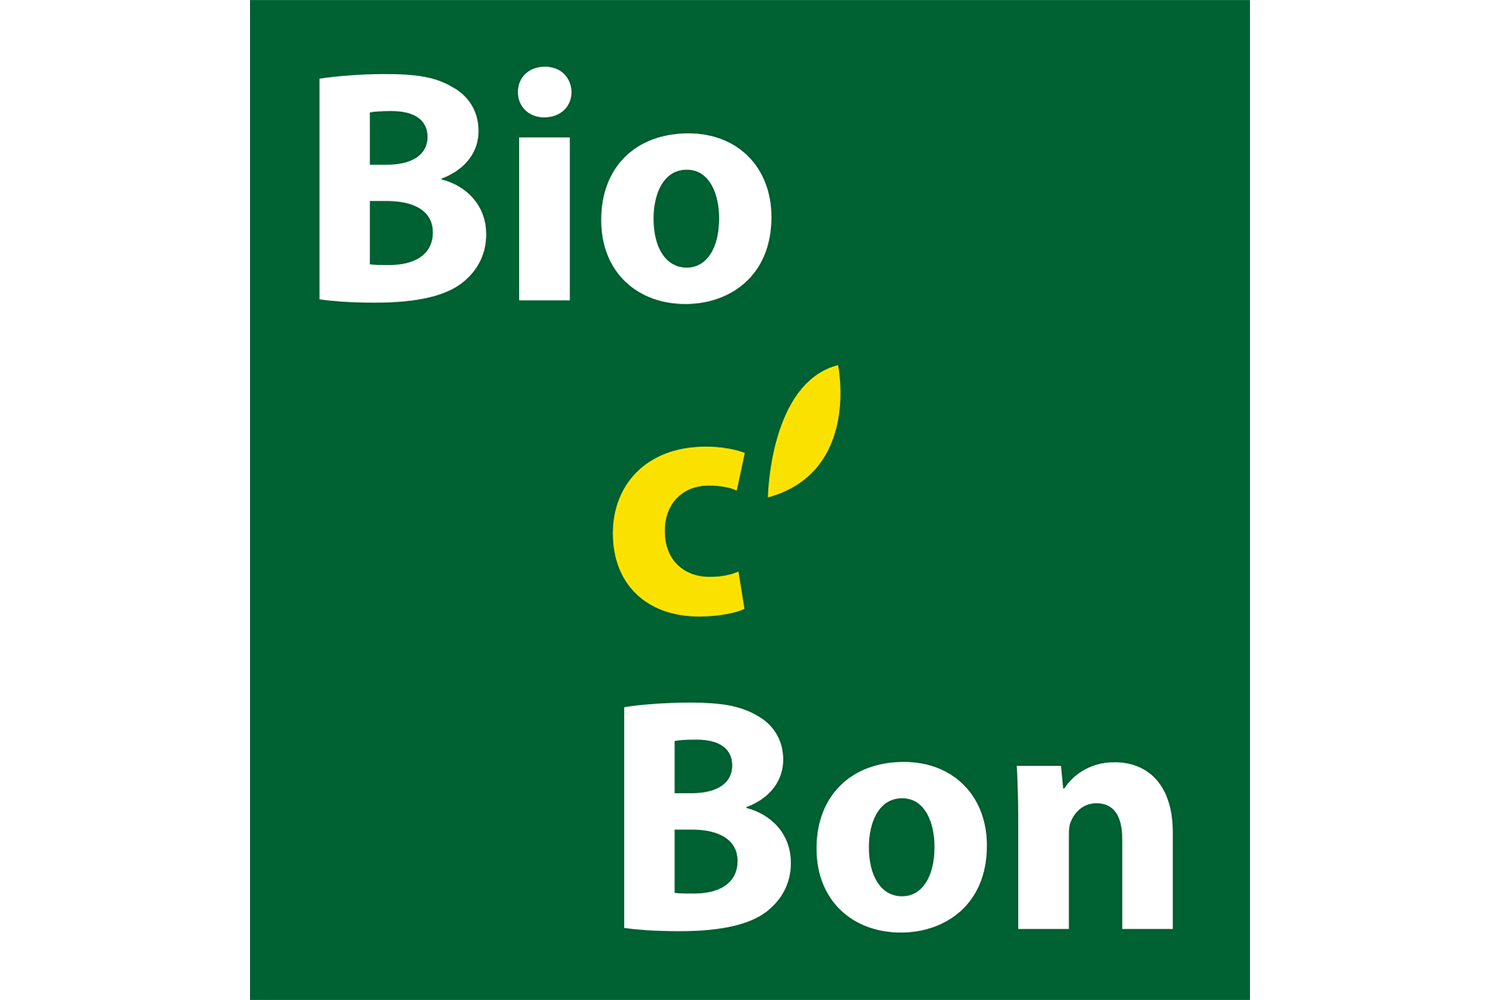 bio cbon